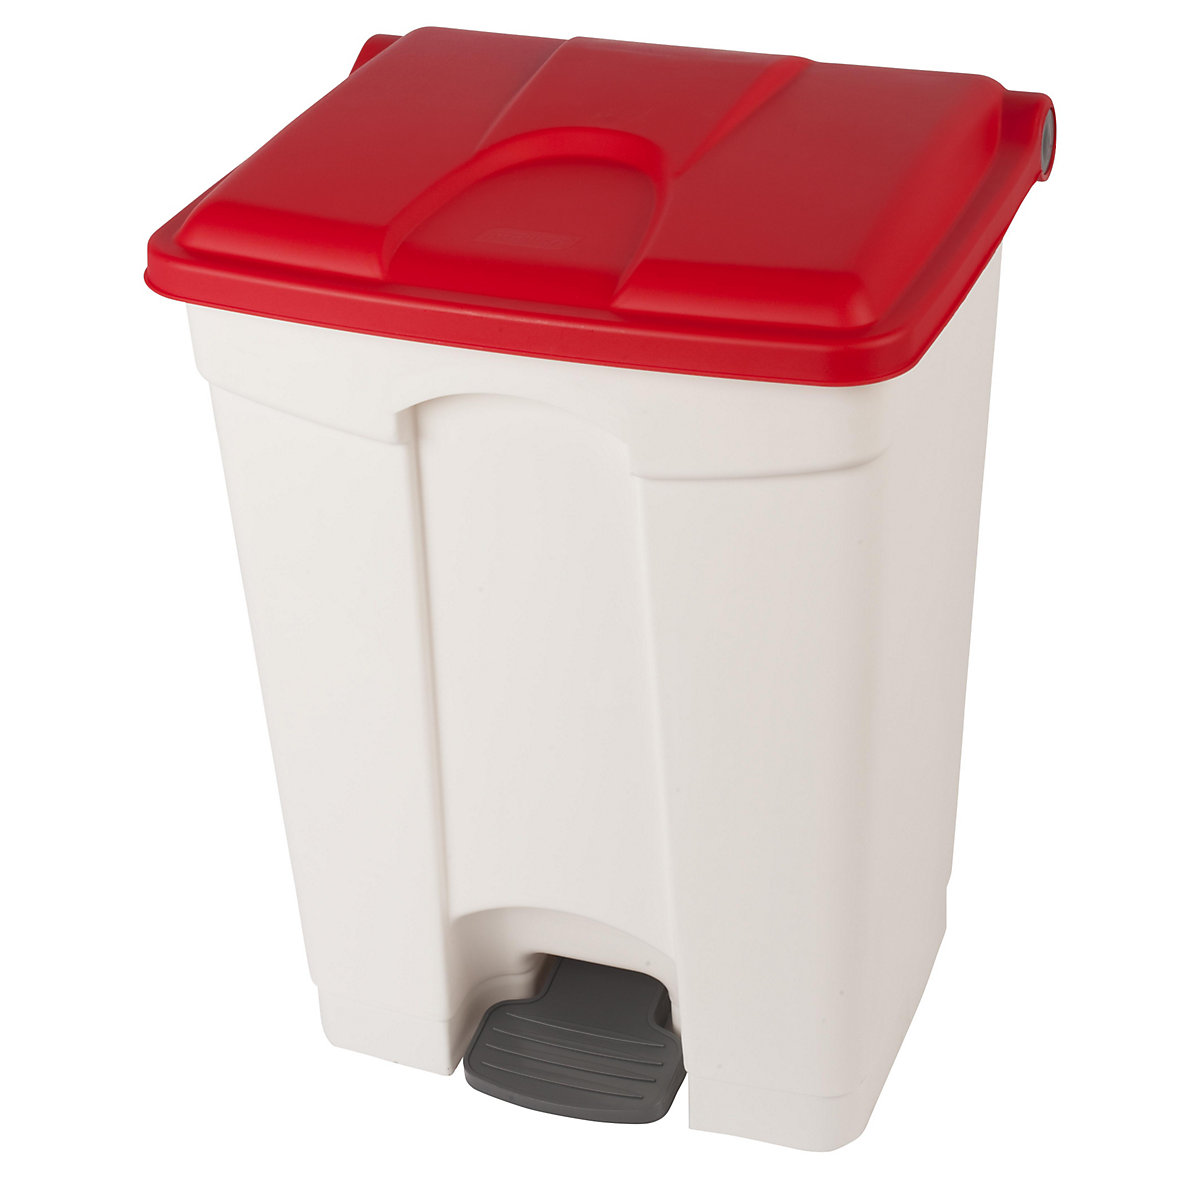 EUROKRAFTbasic – Nádoba na odpad s pedálem, objem 70 l, š x v x h 505 x 675 x 415 mm, bílá, červené víko